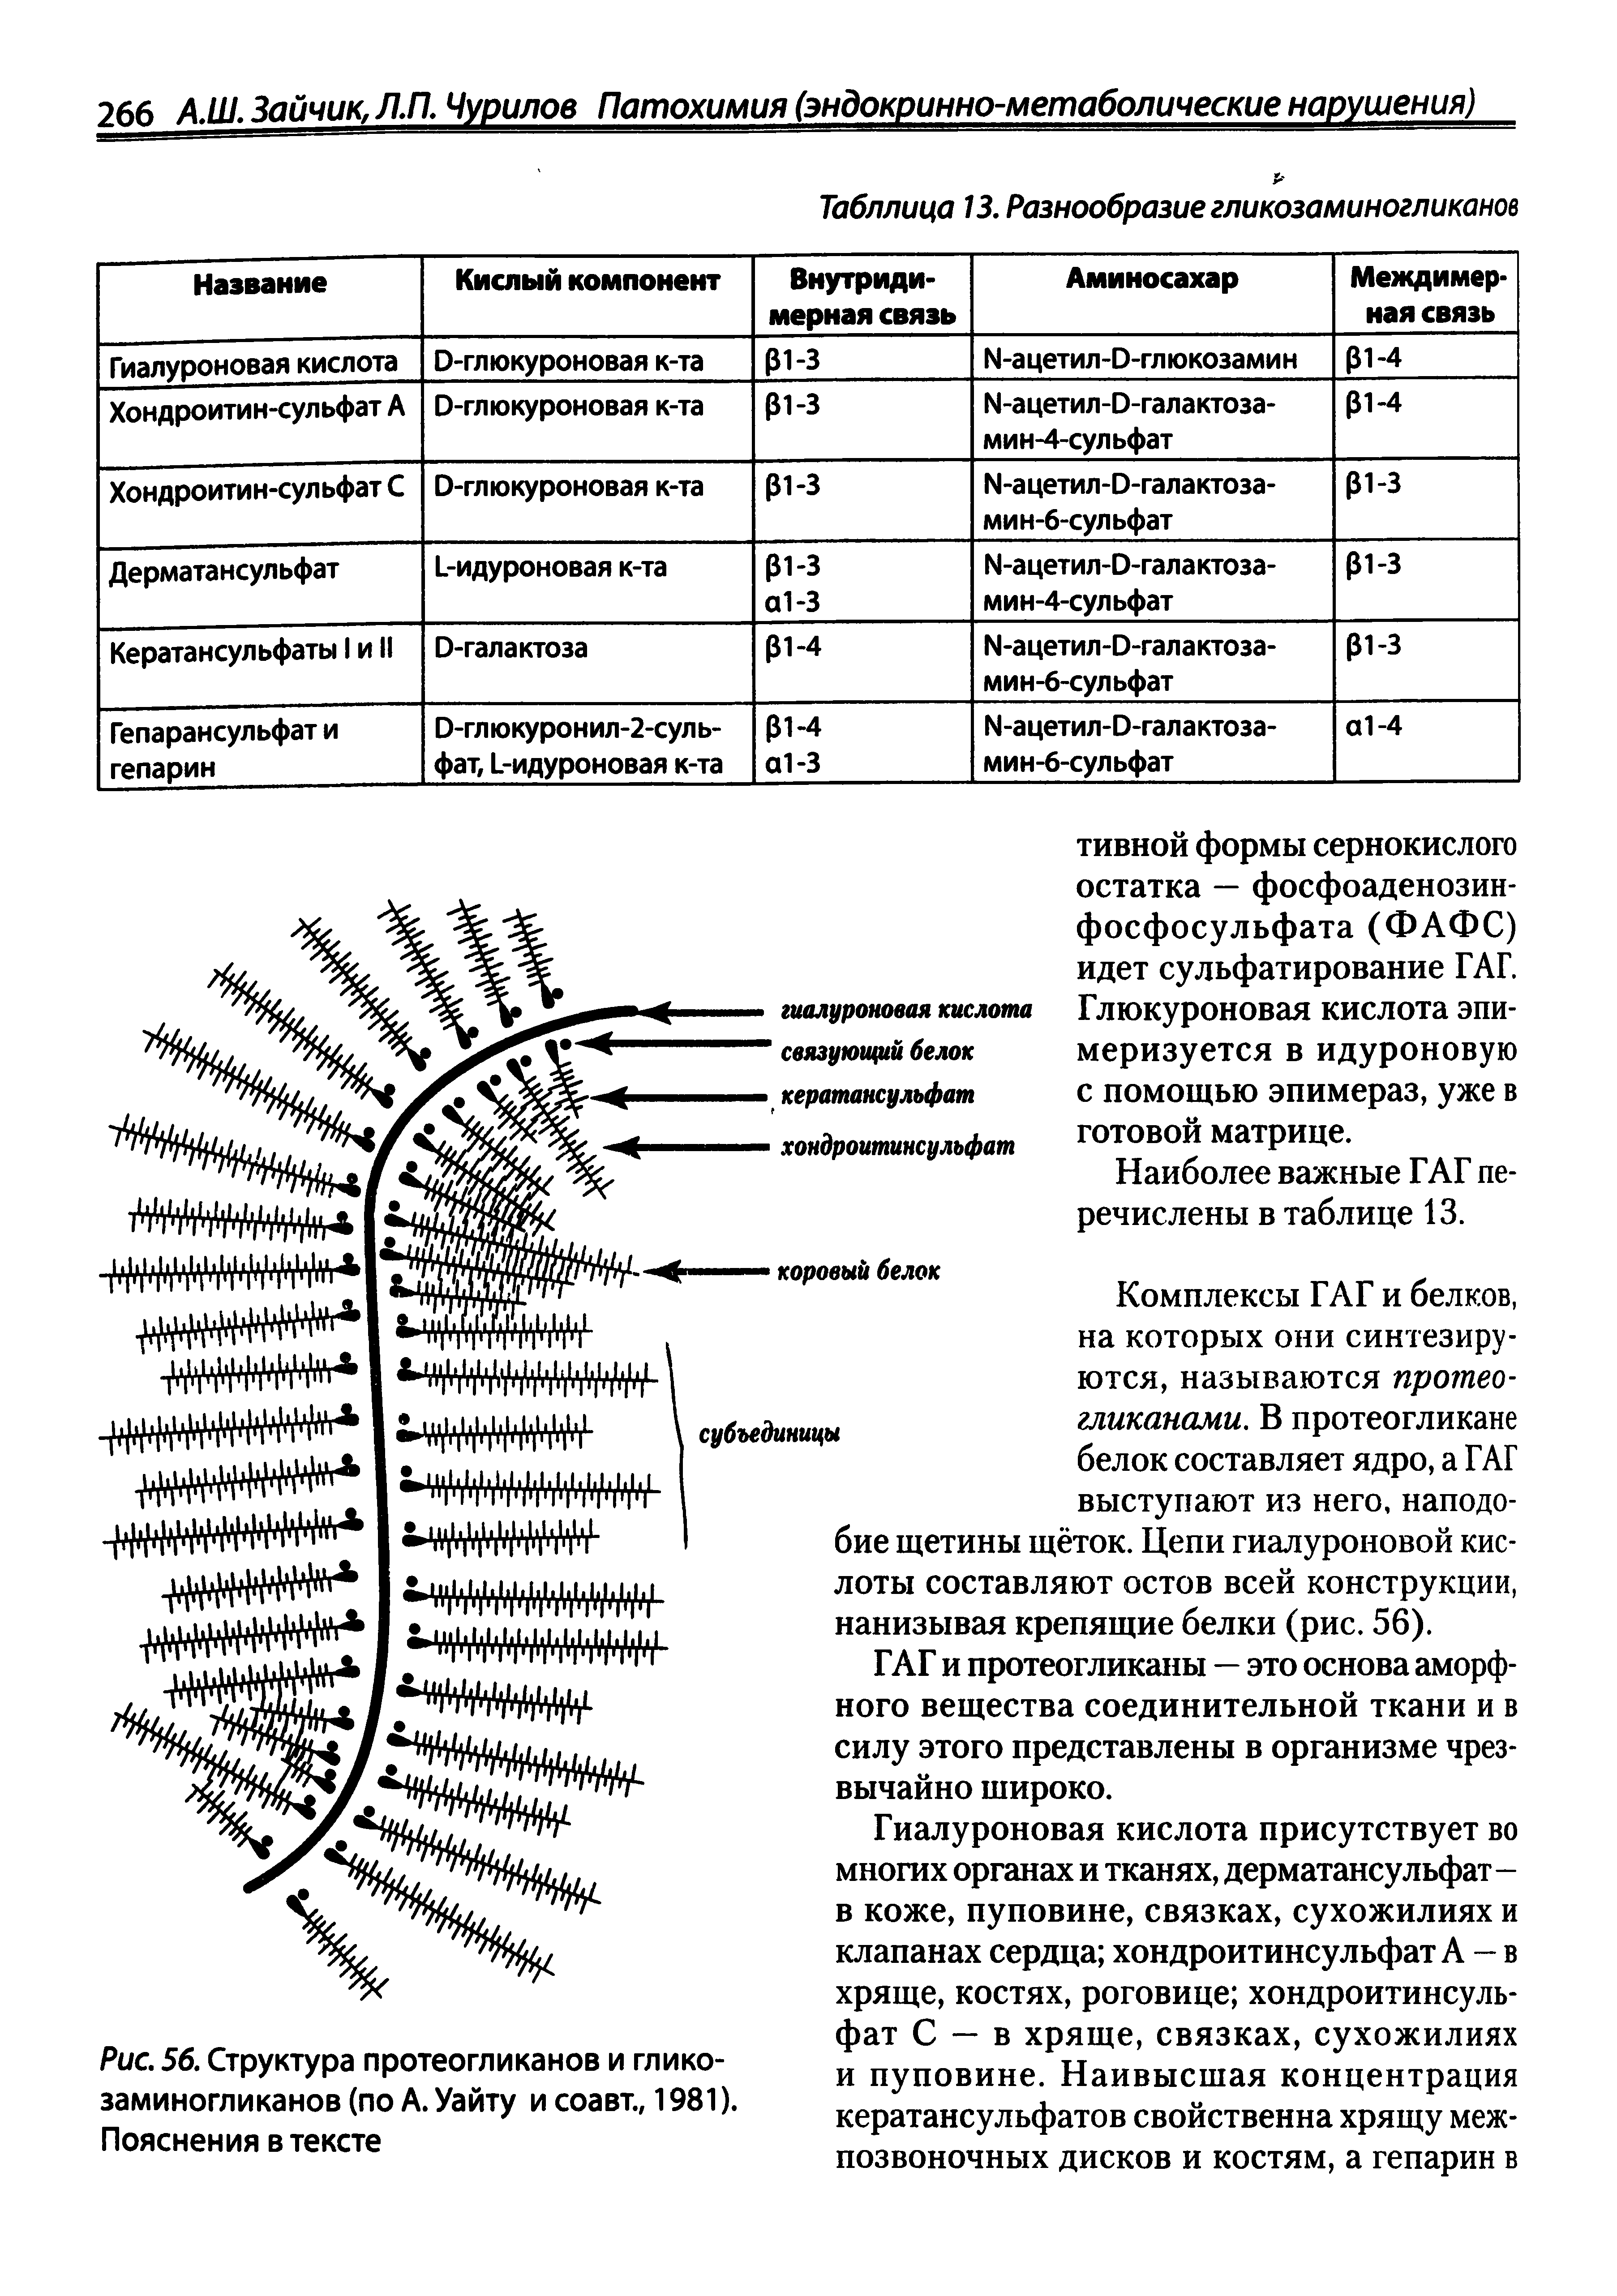 Рис. 56. Структура протеогликанов и гликозаминогликанов (по А. Уайту и соавт., 1981). Пояснения в тексте...